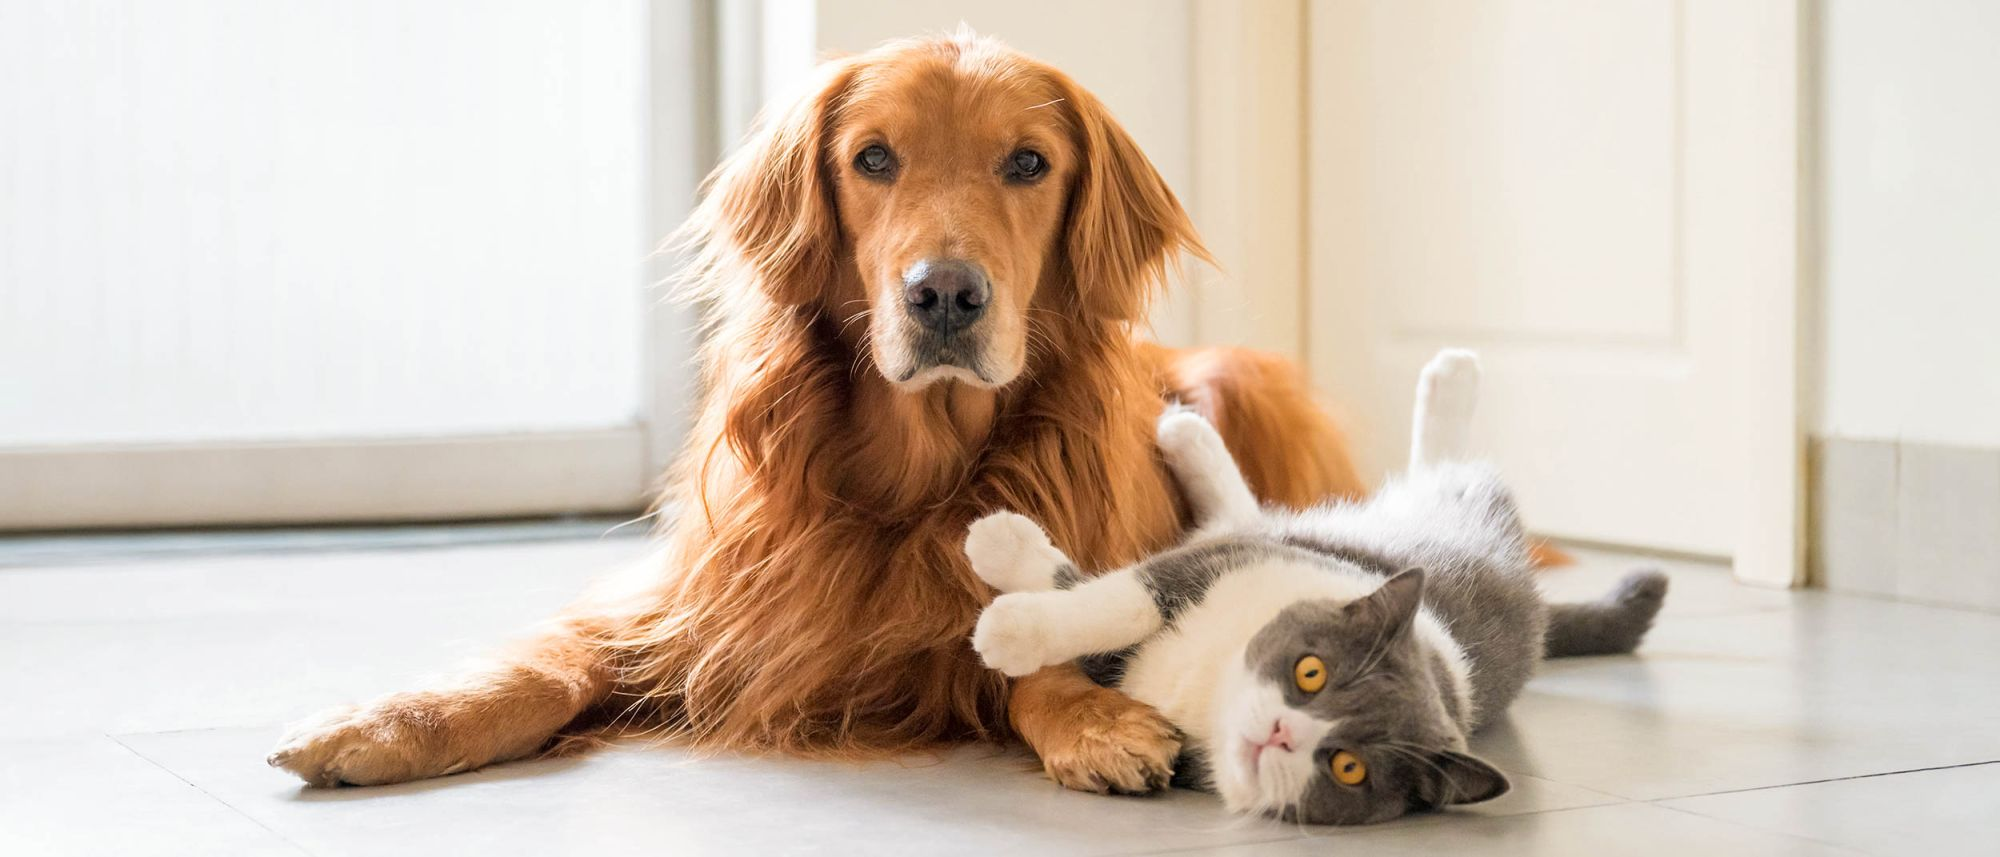 Volwassen kat en hond liggen samen binnenshuis op een keukenvloer